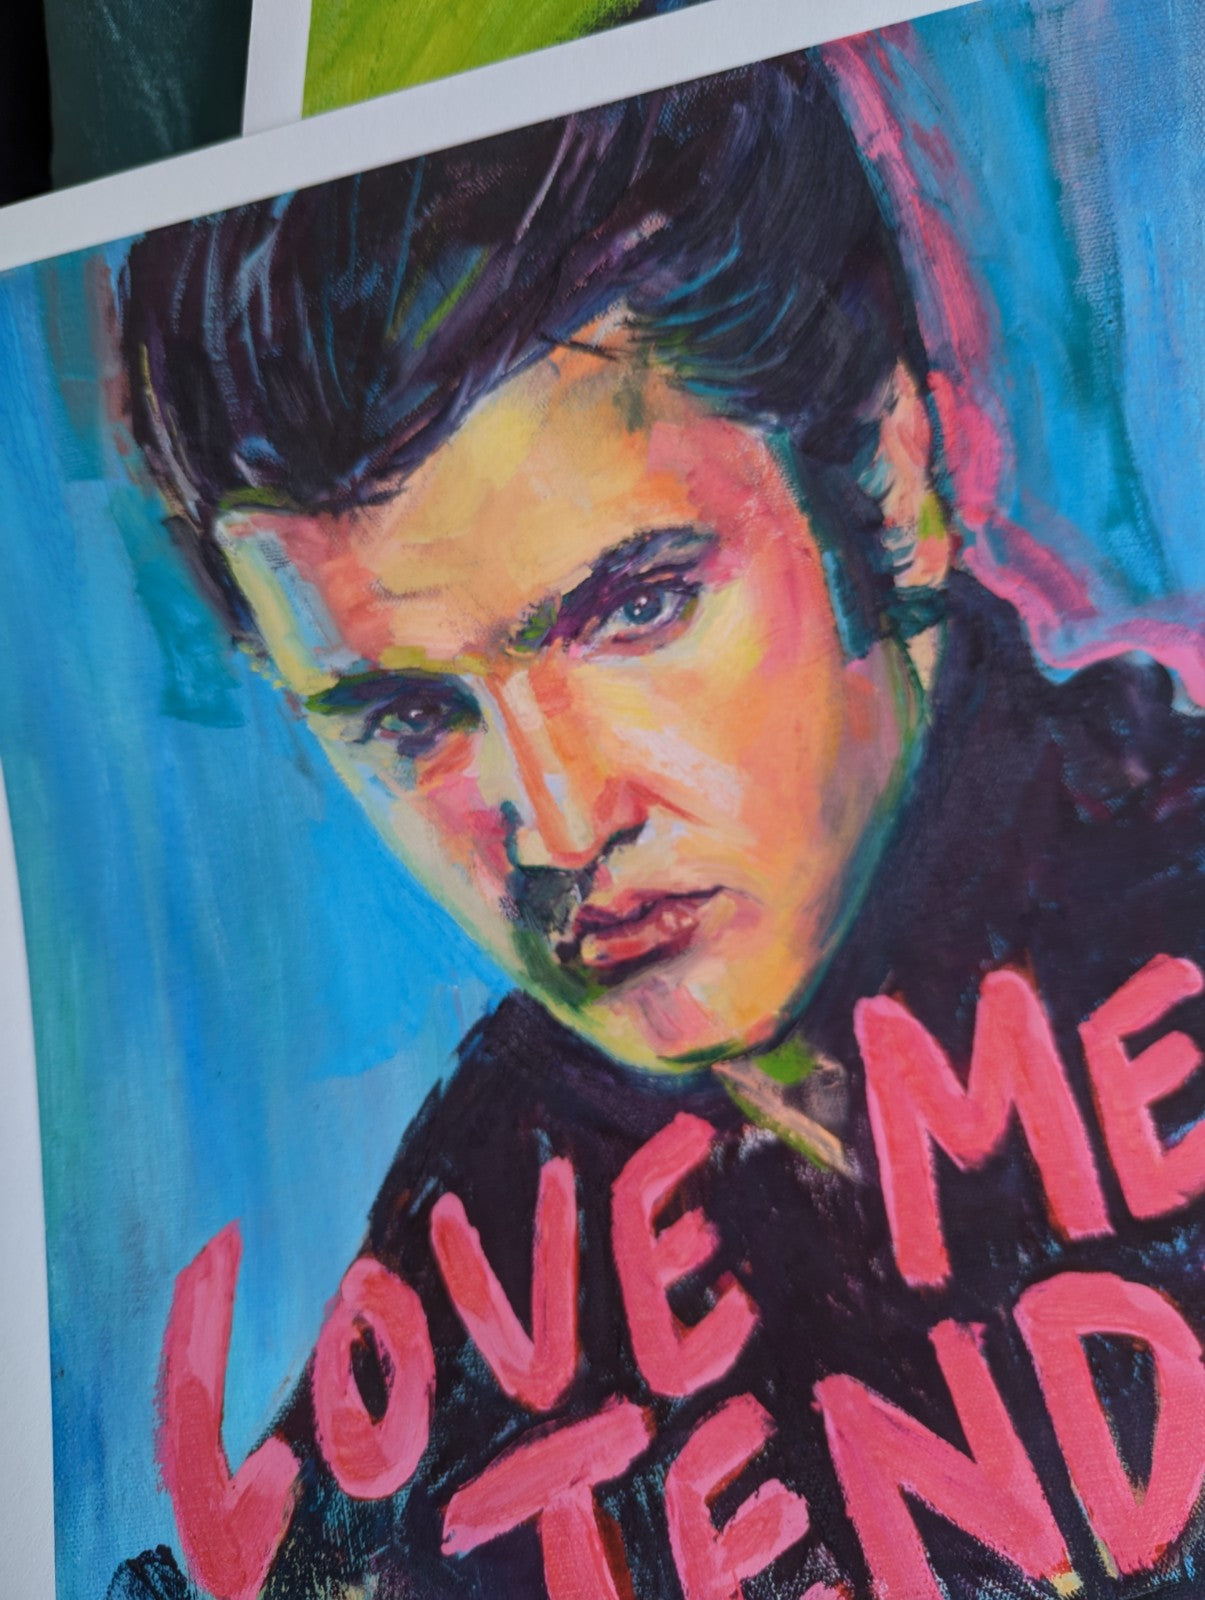 'Love Me Tender' Elvis Print